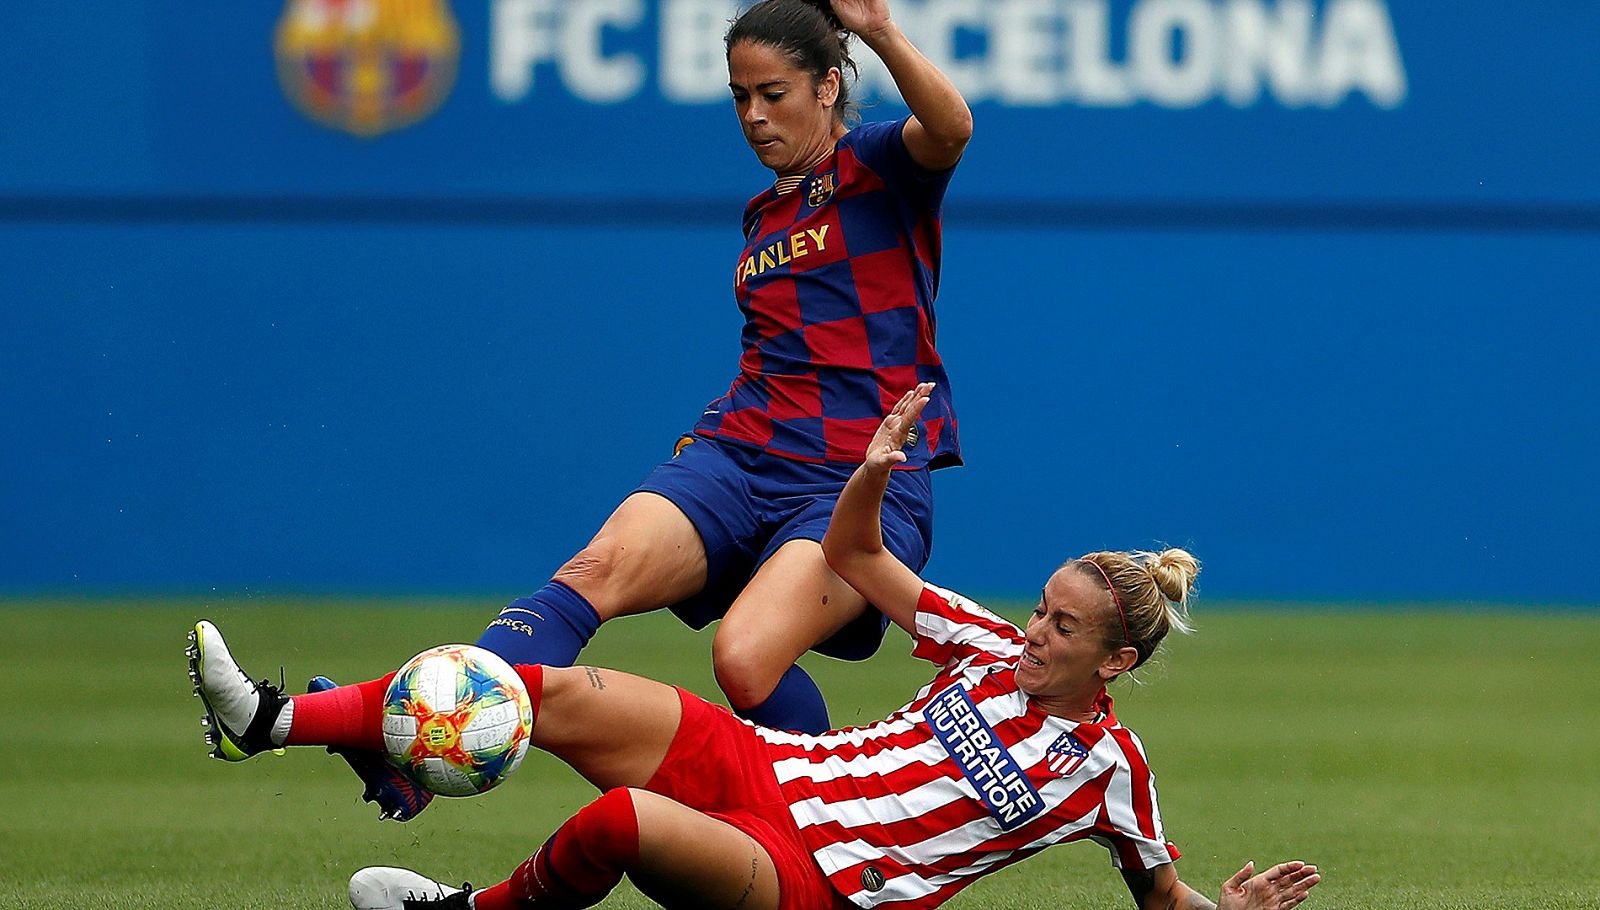 La jugadora del FC Barcelona, Marta, pugna con Menayo, del Atlético de Madrid.